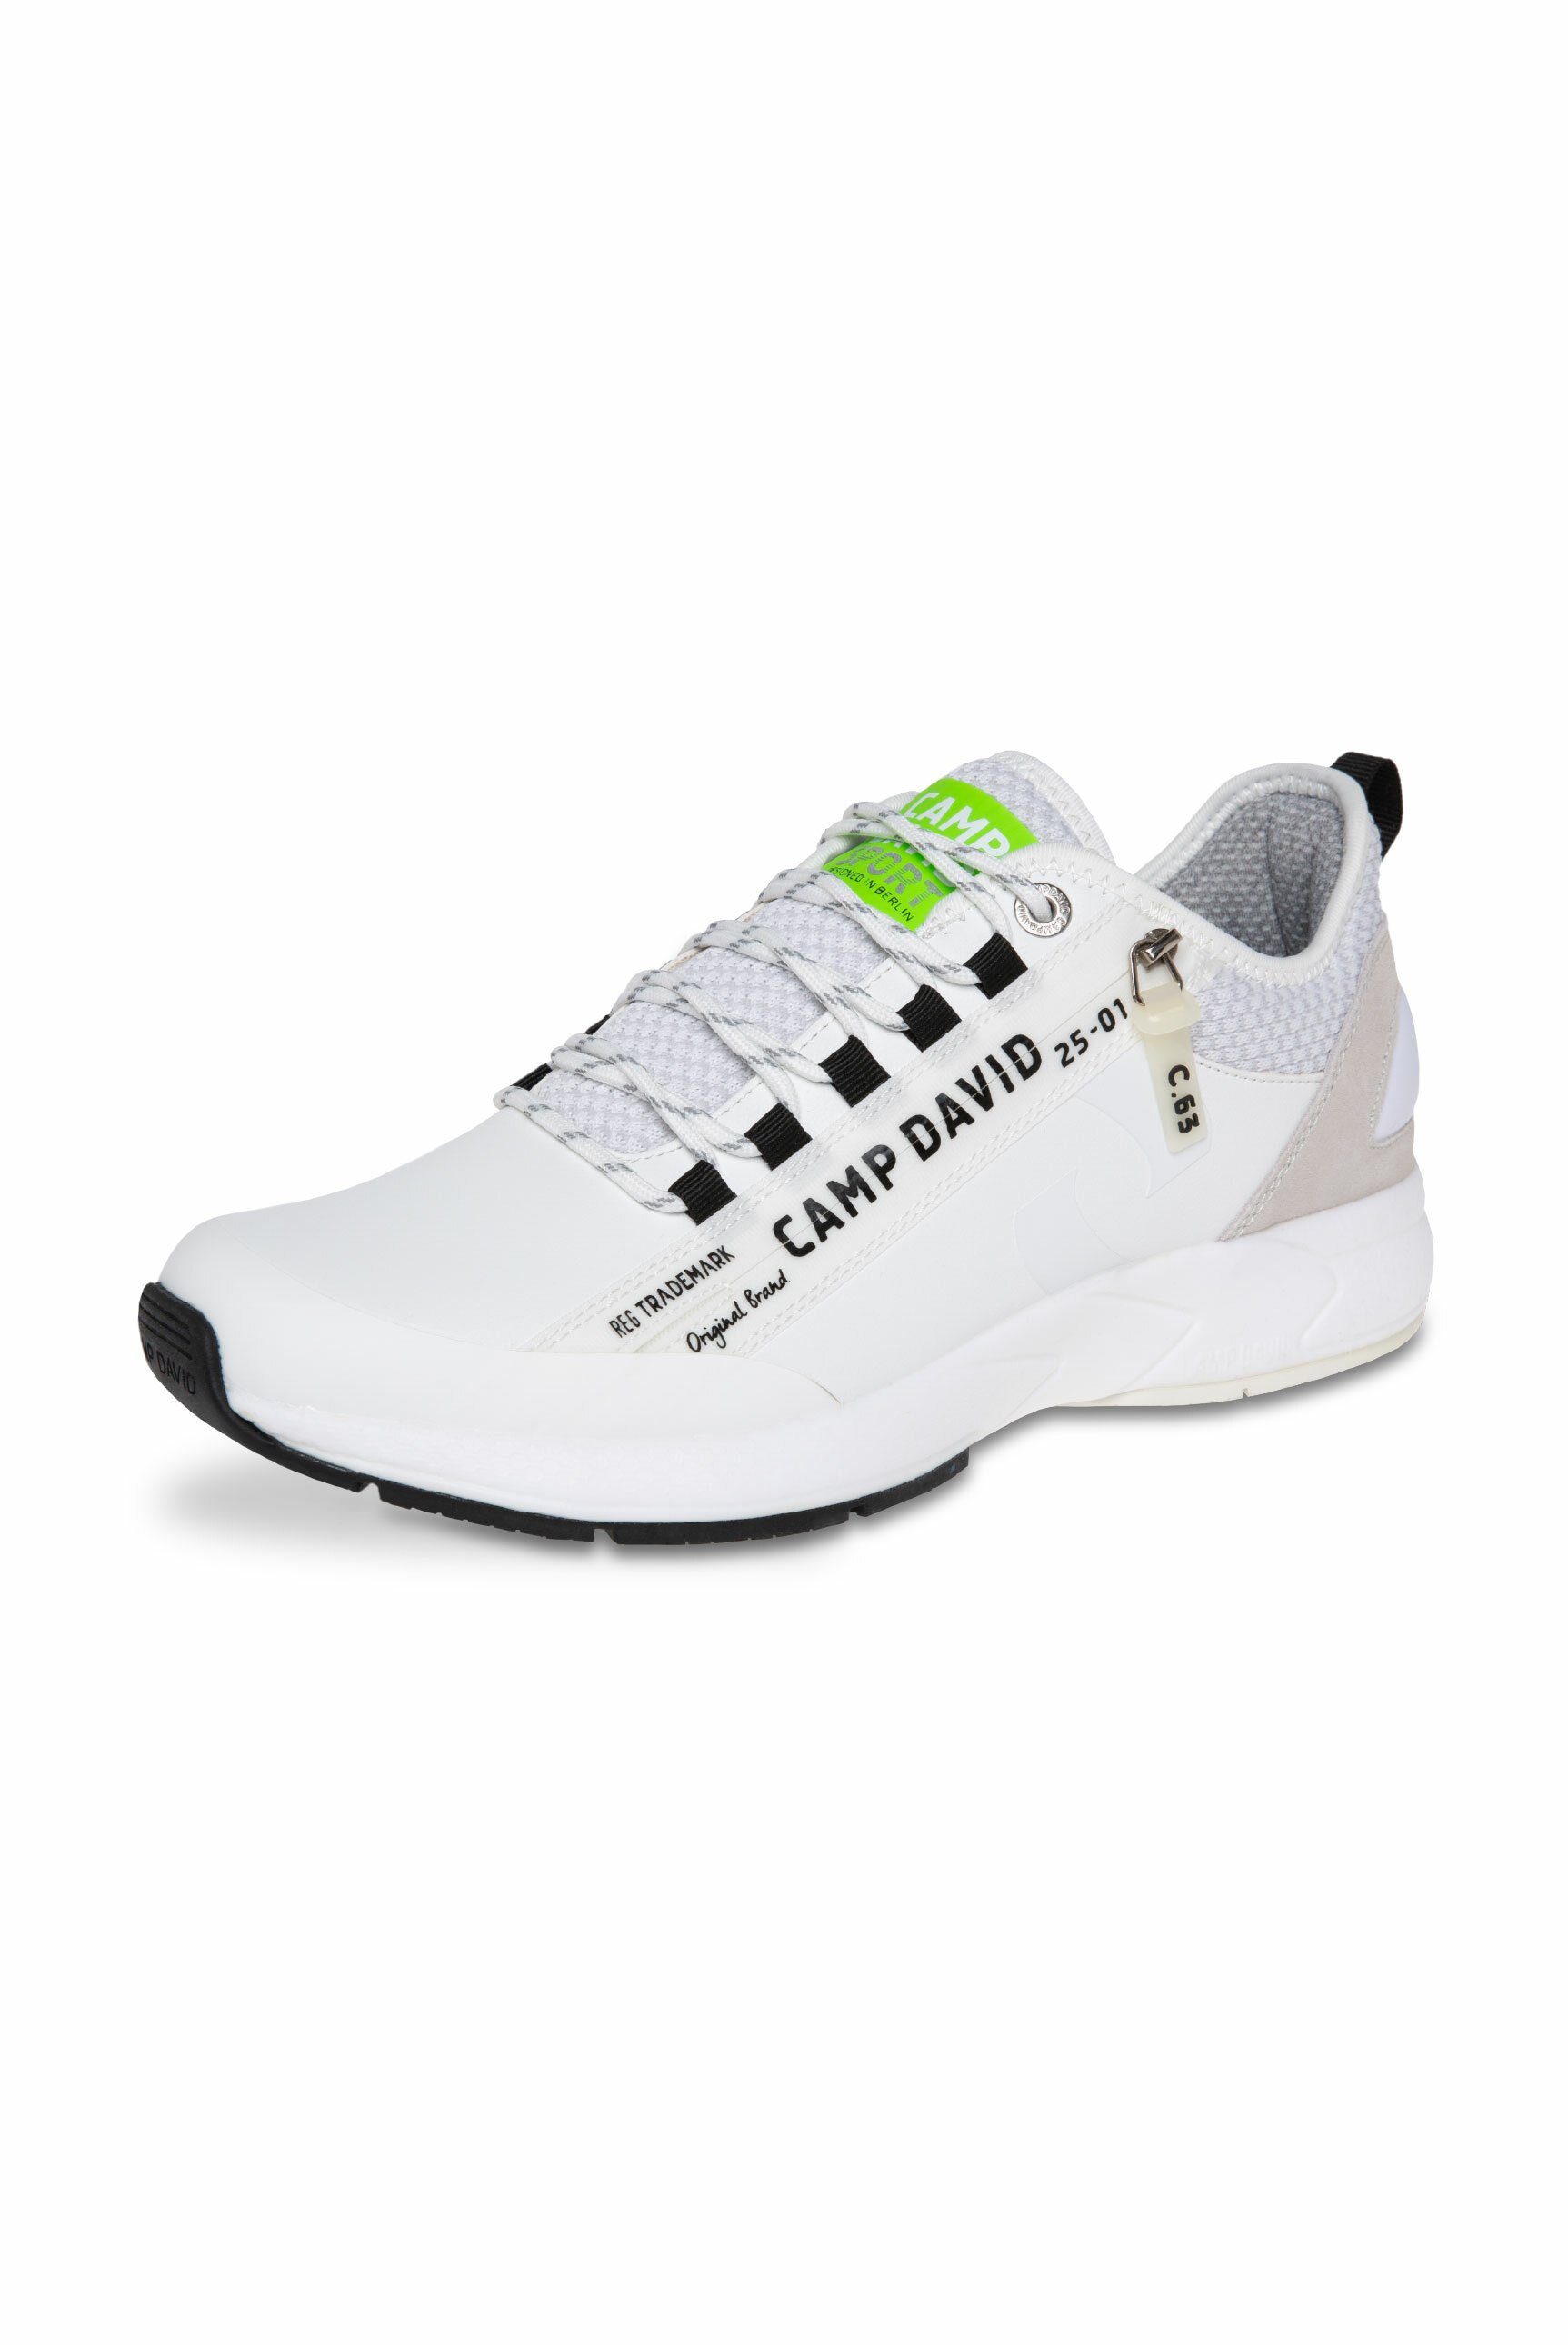 CAMP DAVID Sneaker mit Wechselfußbett, 12-Loch-Schnürung online kaufen |  OTTO